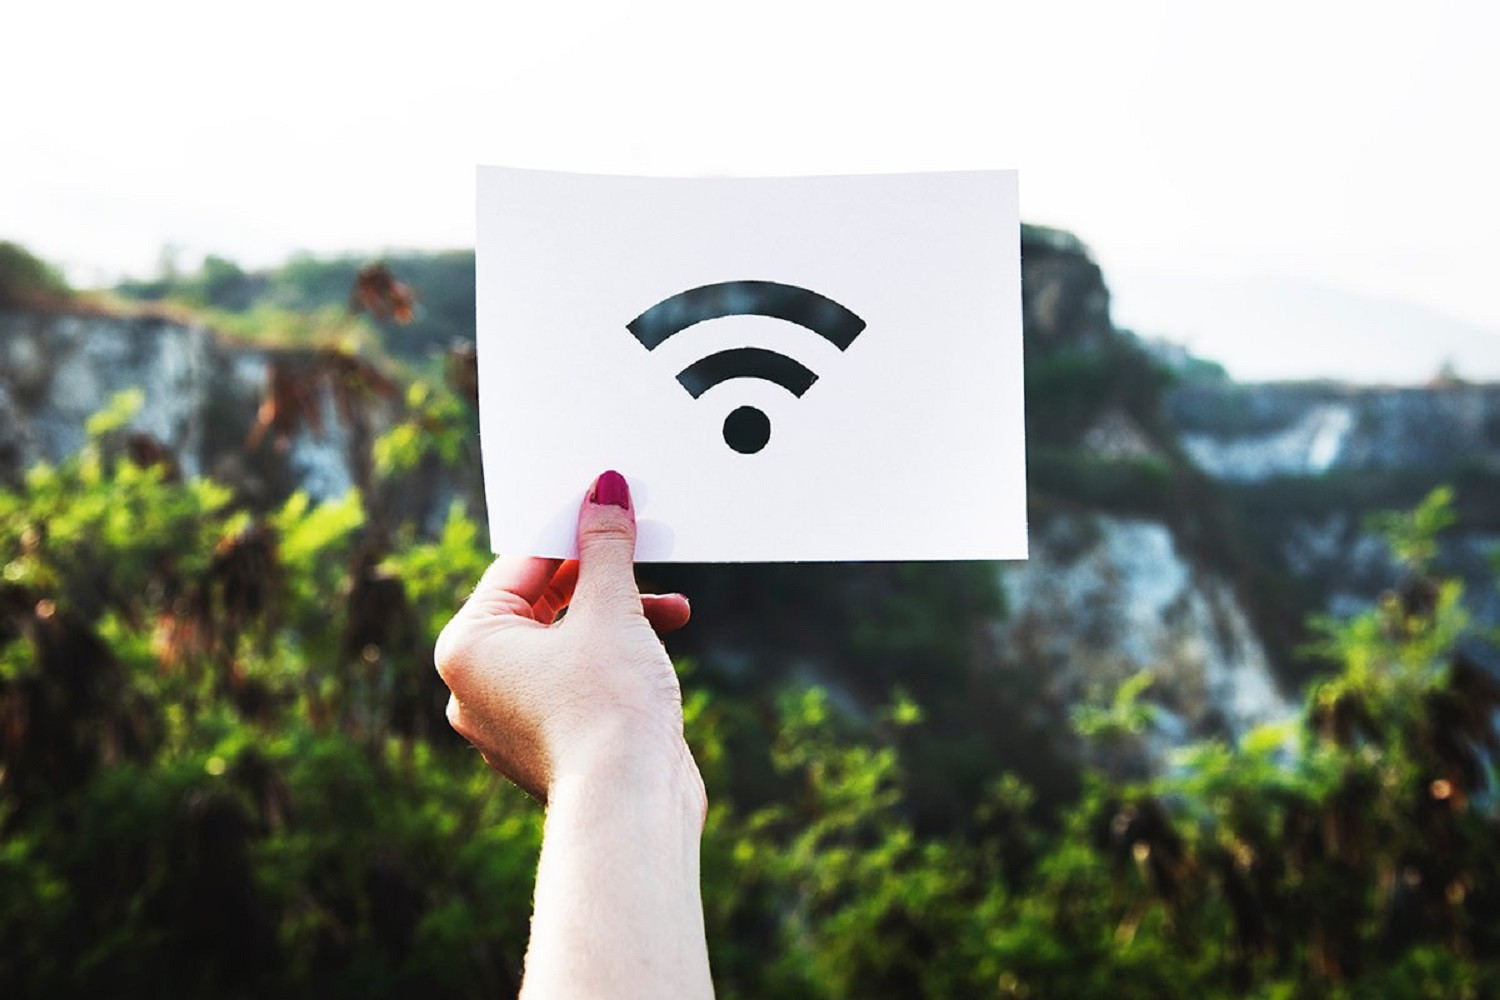 Τοποθέτηση δωρεάν wifi σε κεντρικά σημεία της Αθηένου στα πλαίσια της πρόσκλησης wifi4eu από τον Δήμο Αθηένου